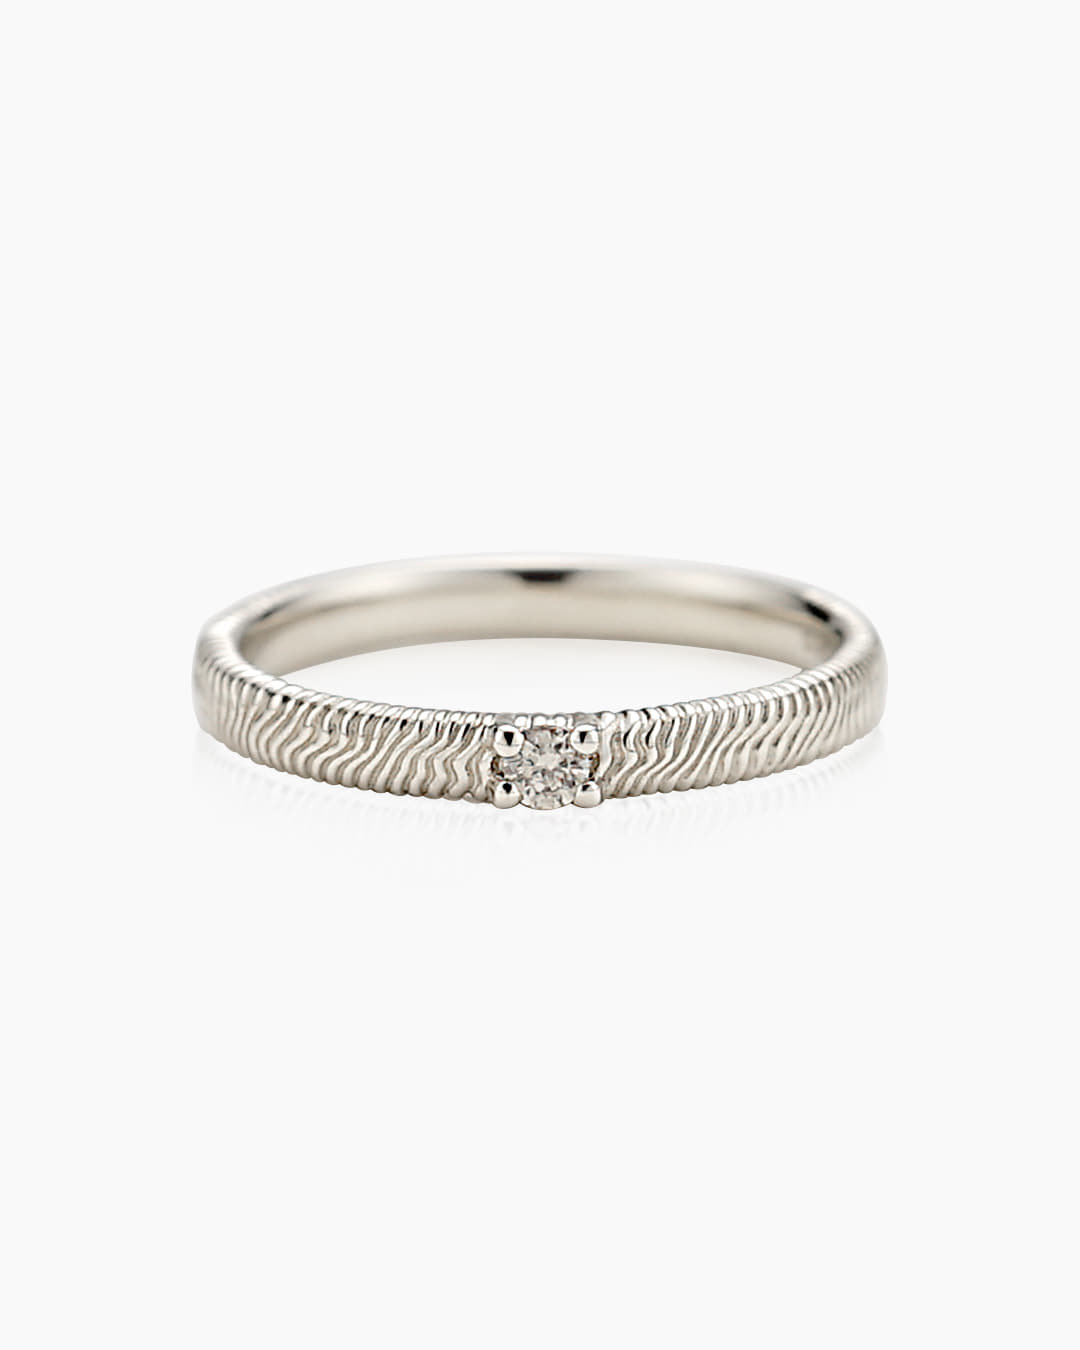 다이아몬드가 세팅된 반지이다.